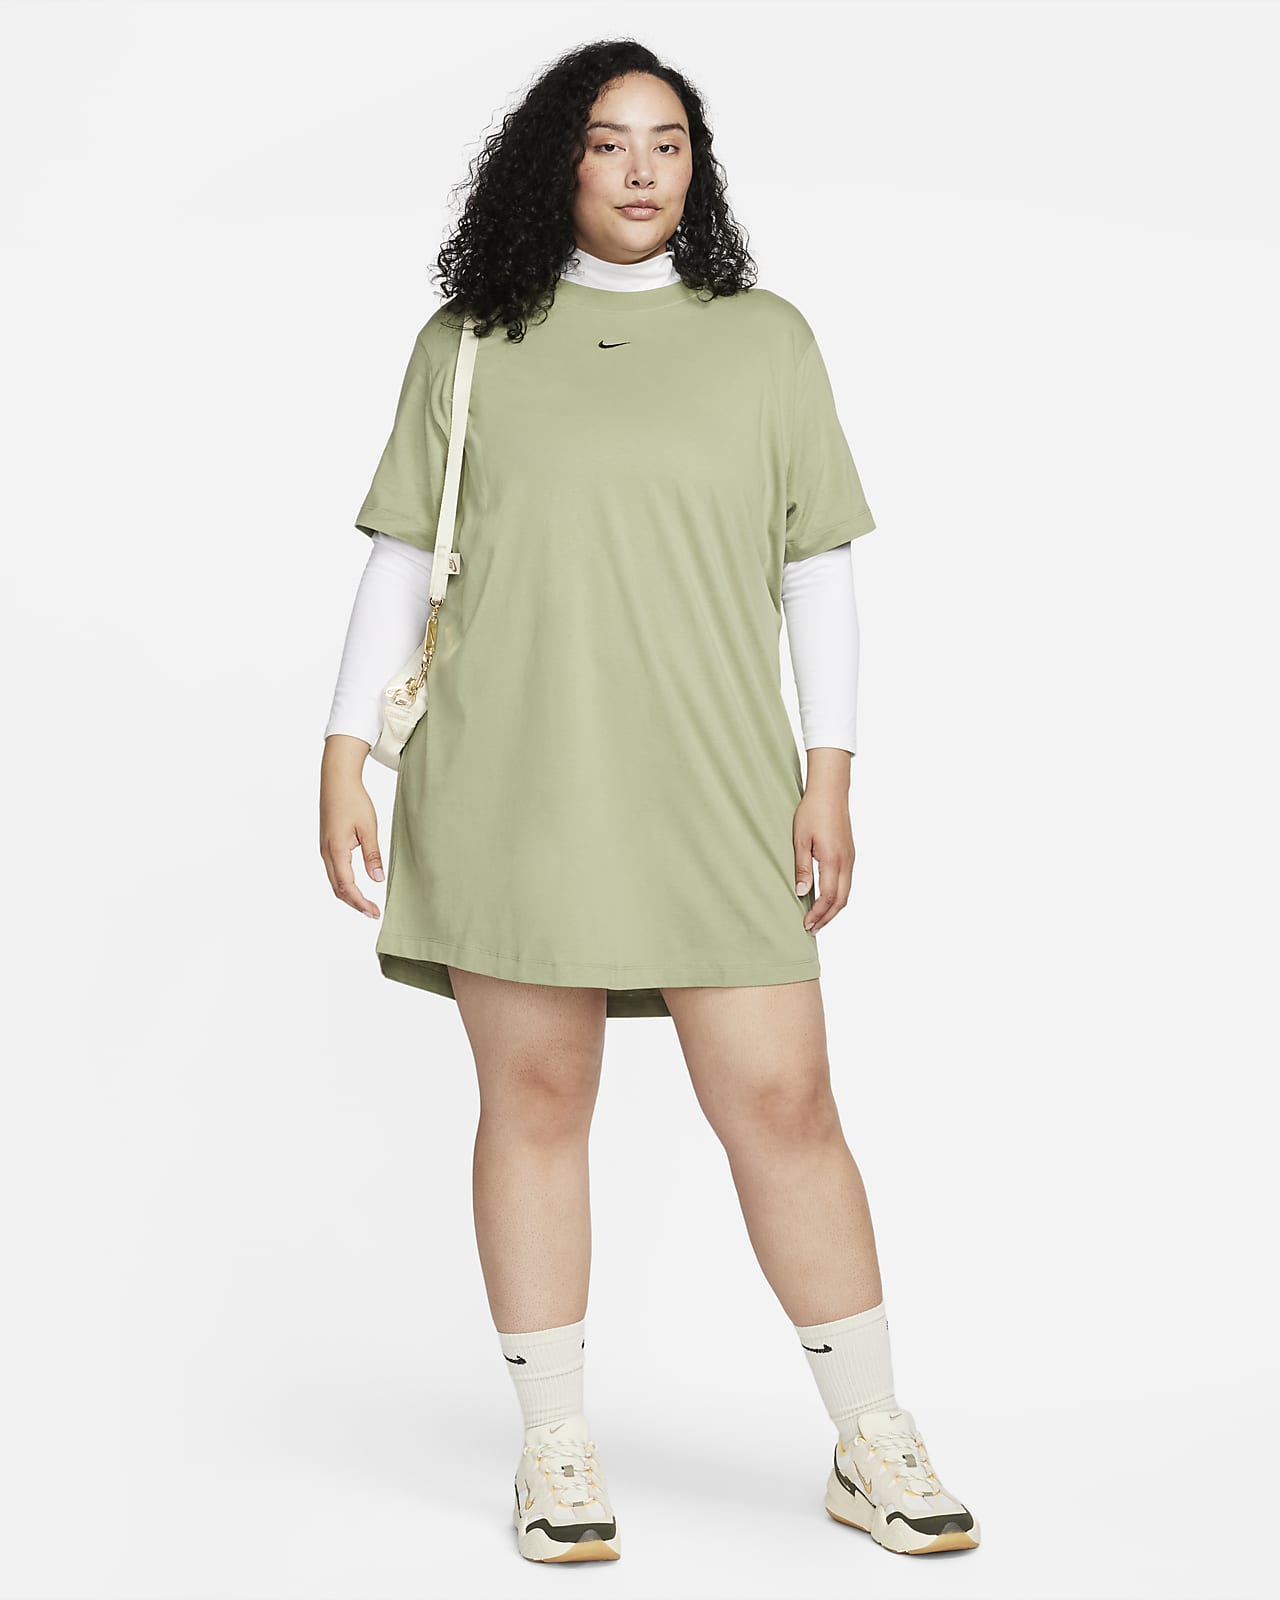 zebra Lamme stå Nike Sportswear Essential Women's Short-Sleeve T-Shirt Dress (Plus Size).  Nike.com